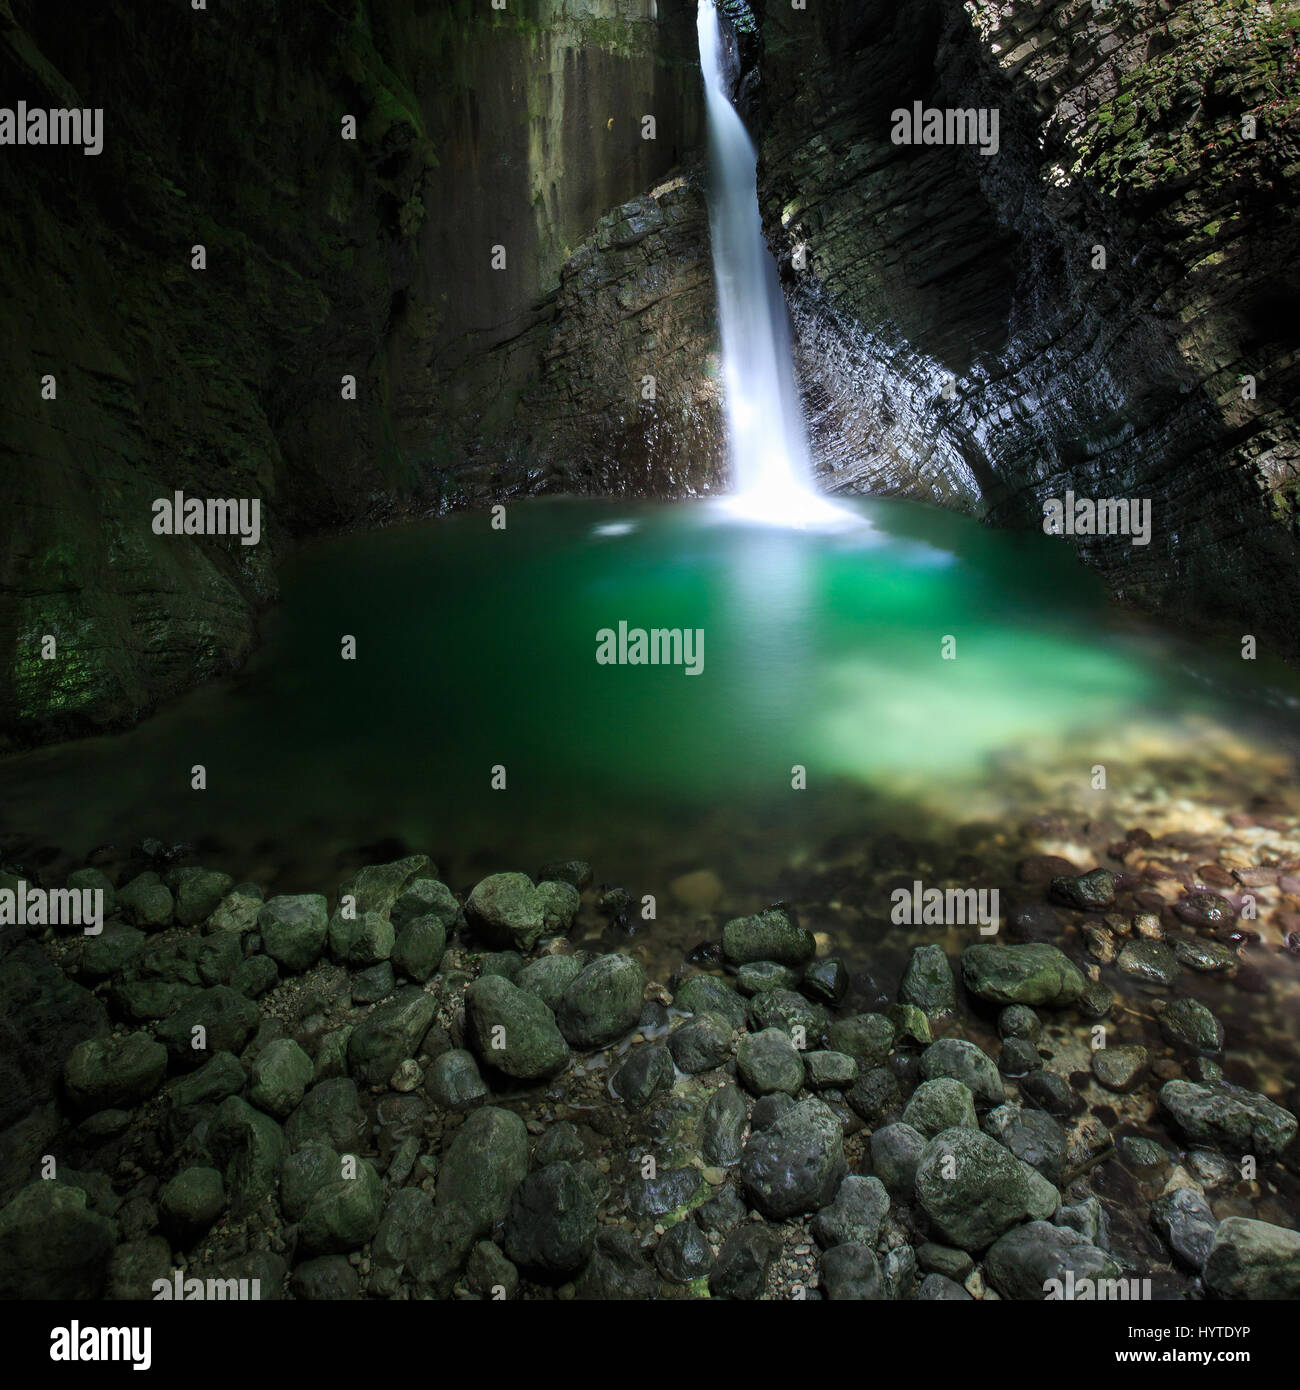 Romantica nascosta una cascata che scorre attraverso un crepaccio, cadendo in profondità in una stretta gola, formando il lago verde, illuminata da strette sunray, penetrare all'c Foto Stock